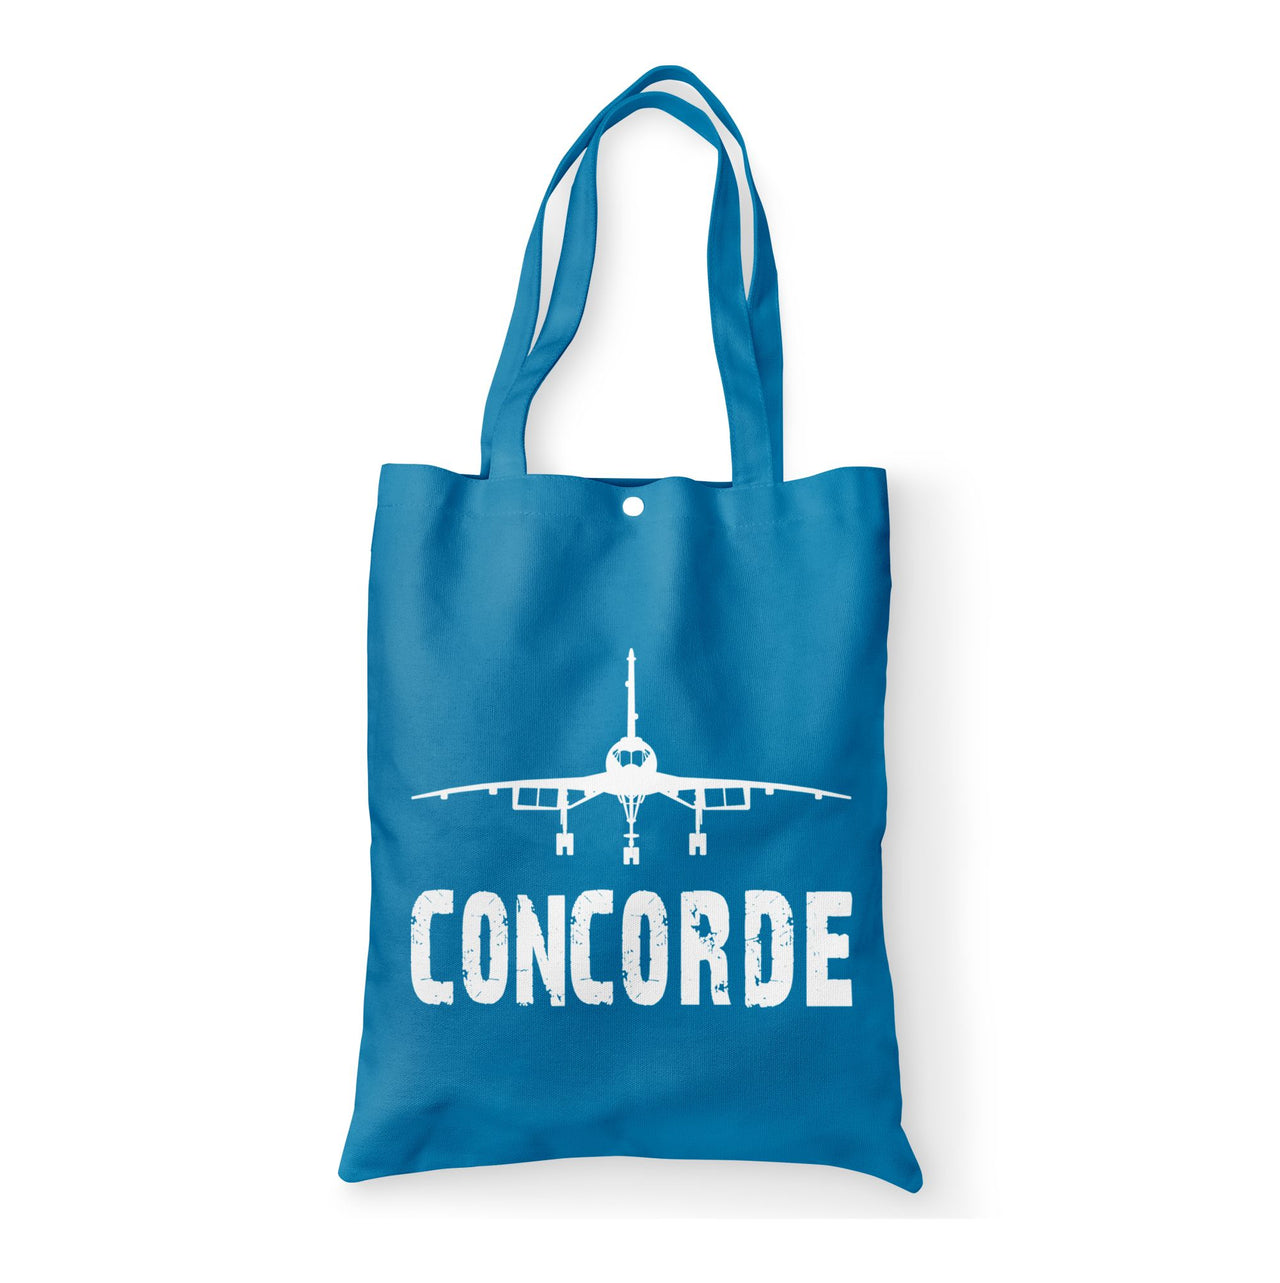 Concorde & Plane Designed Tote Bags